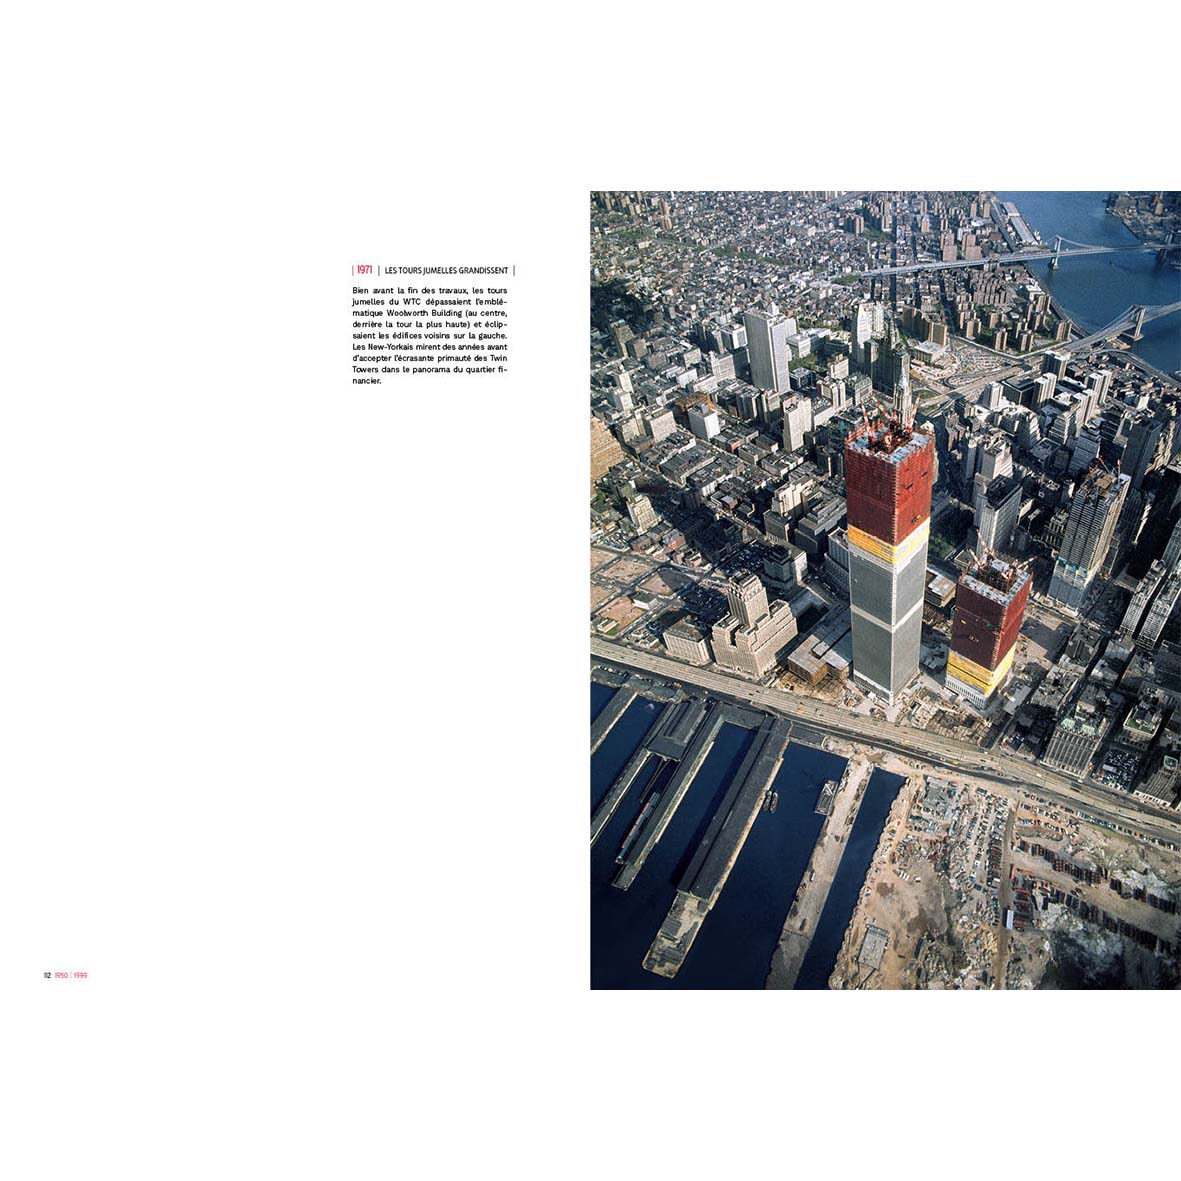 New York - Un siècle de photographies aériennes